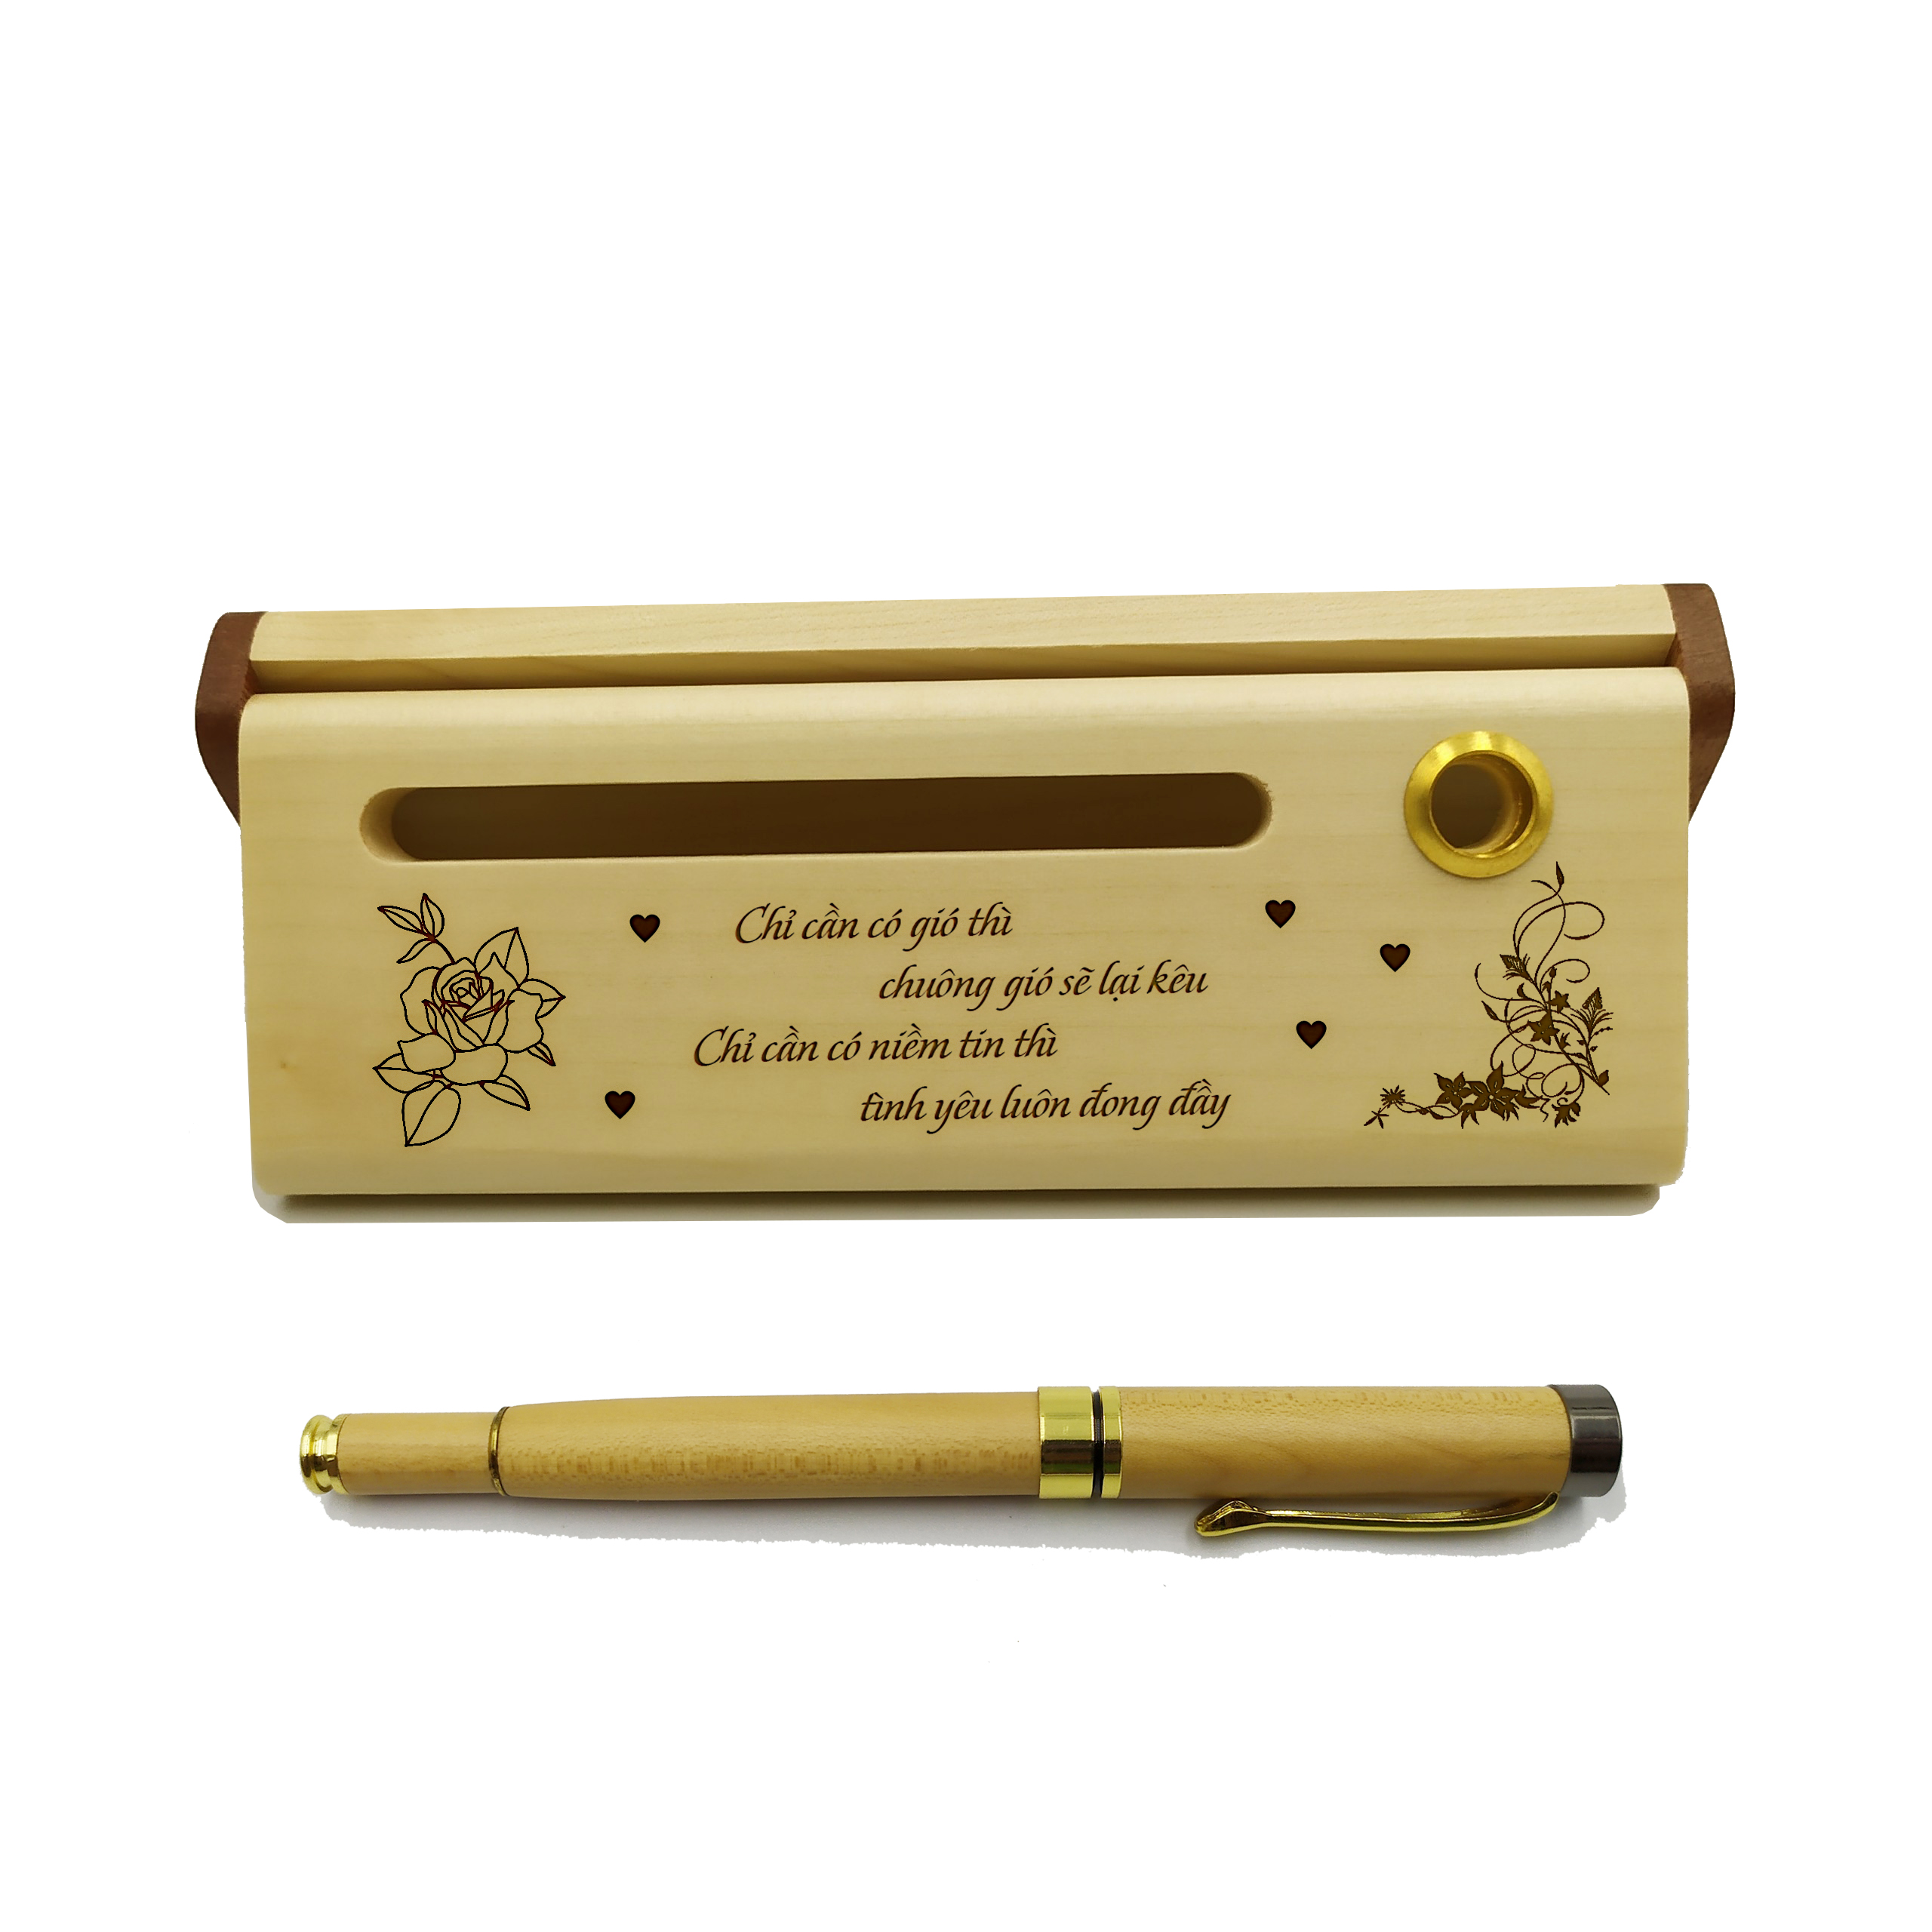 Bộ bút gỗ cao cấp tặng người yêu - mẫu 01 (Kèm hộp đựng sang trọng)